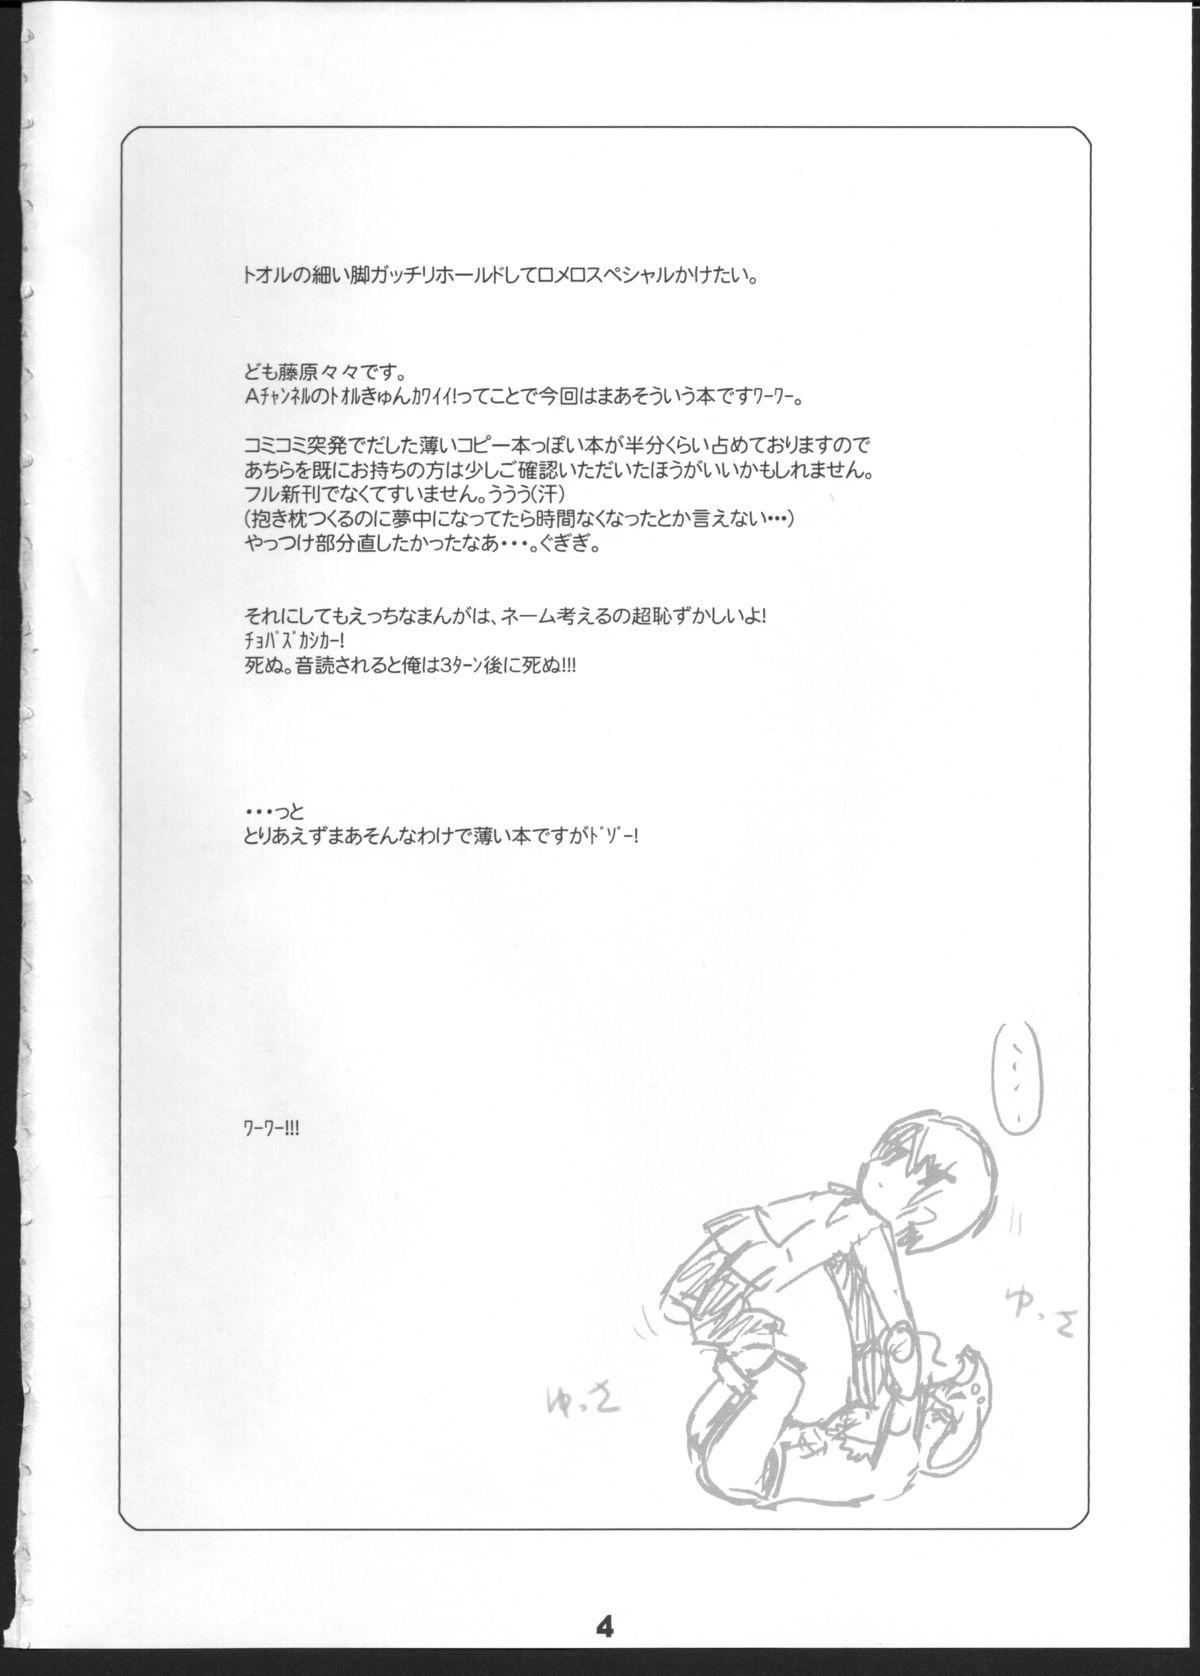 Riding Q: Uniuni Shiteru? A: Warito Shiteru. - A channel Piroca - Page 3